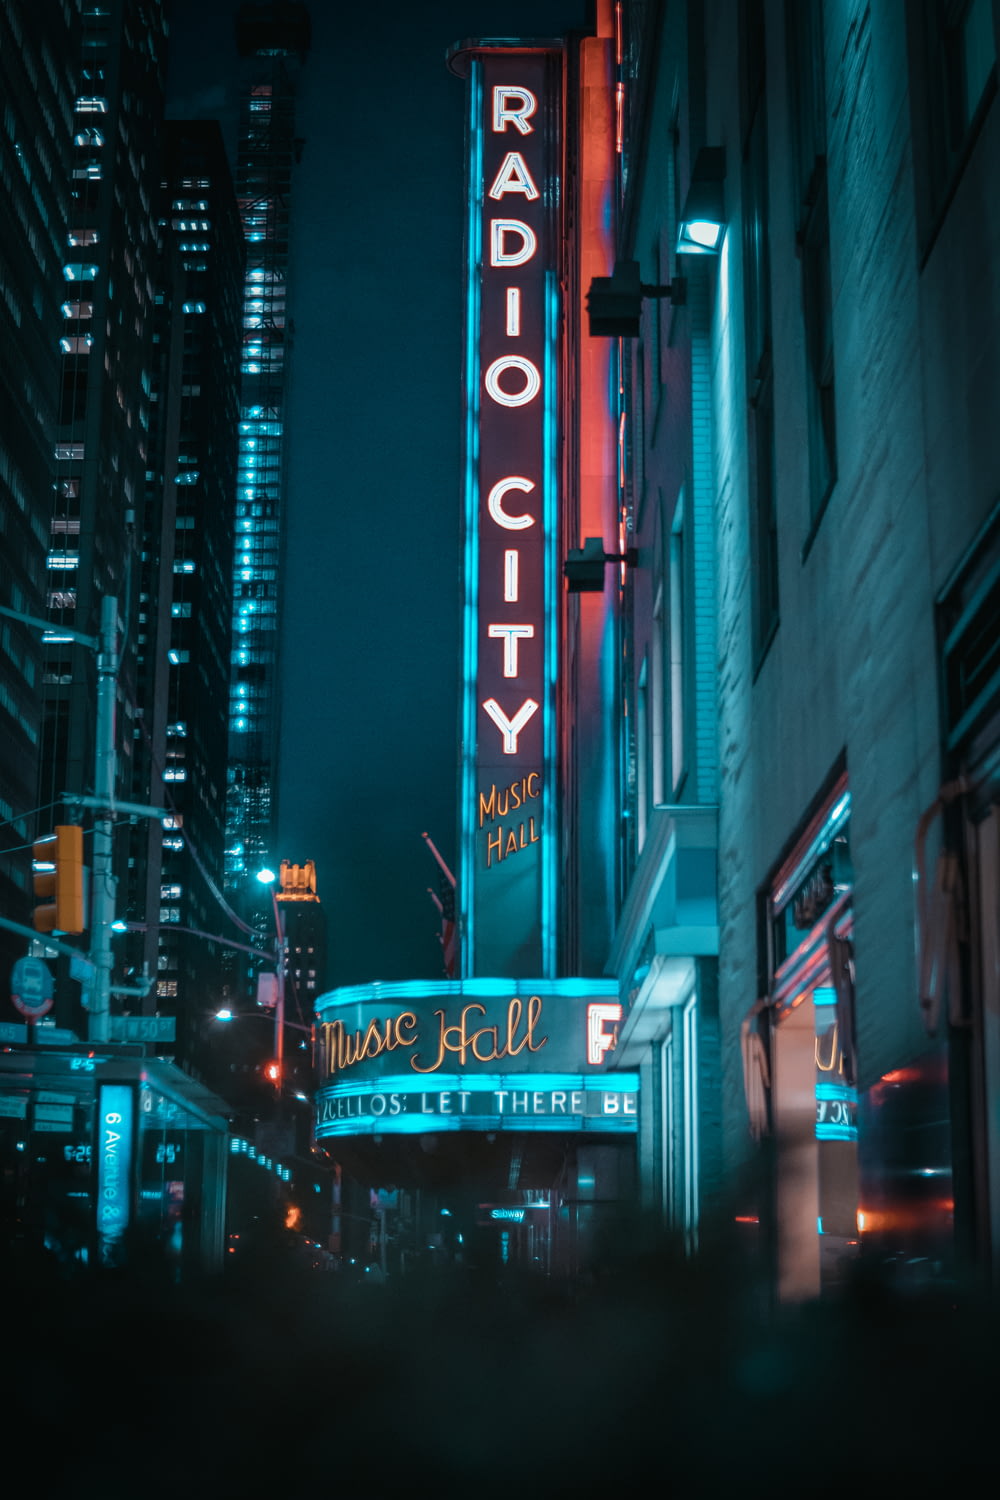 Radio City signage during nighttime